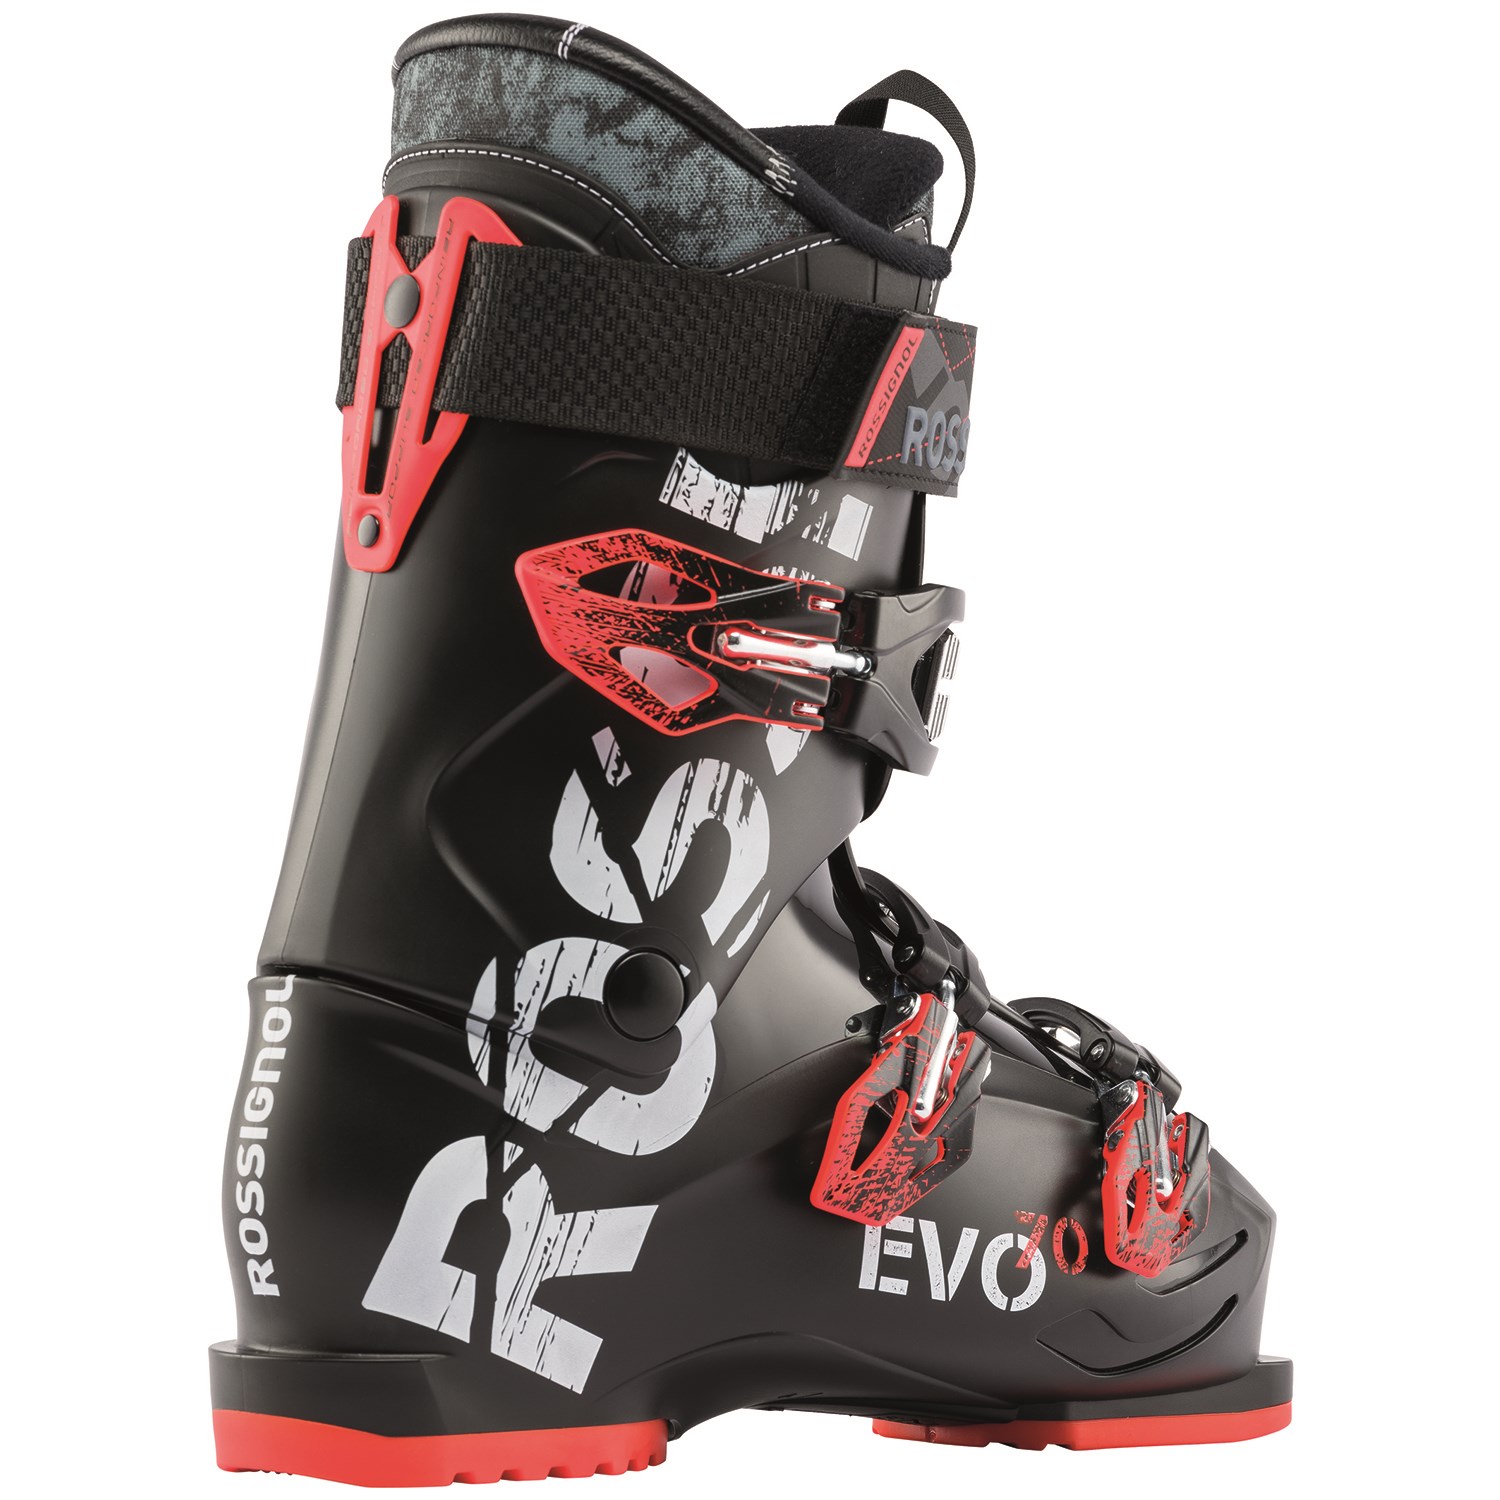 Rossignol Evo 70 Ski Boots 2019 | evo